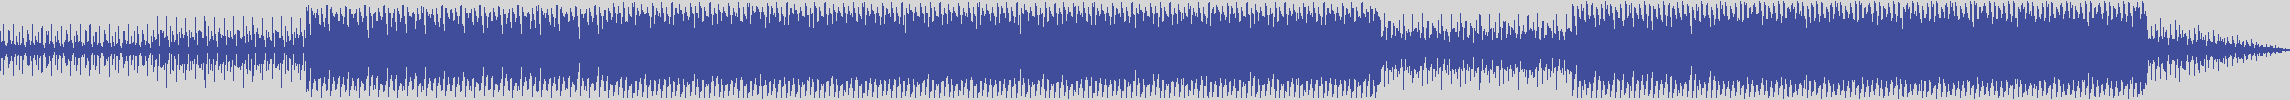 nf_boyz_records [NFY014] Glenn Foster - Royale [Tribal Mix] audio wave form